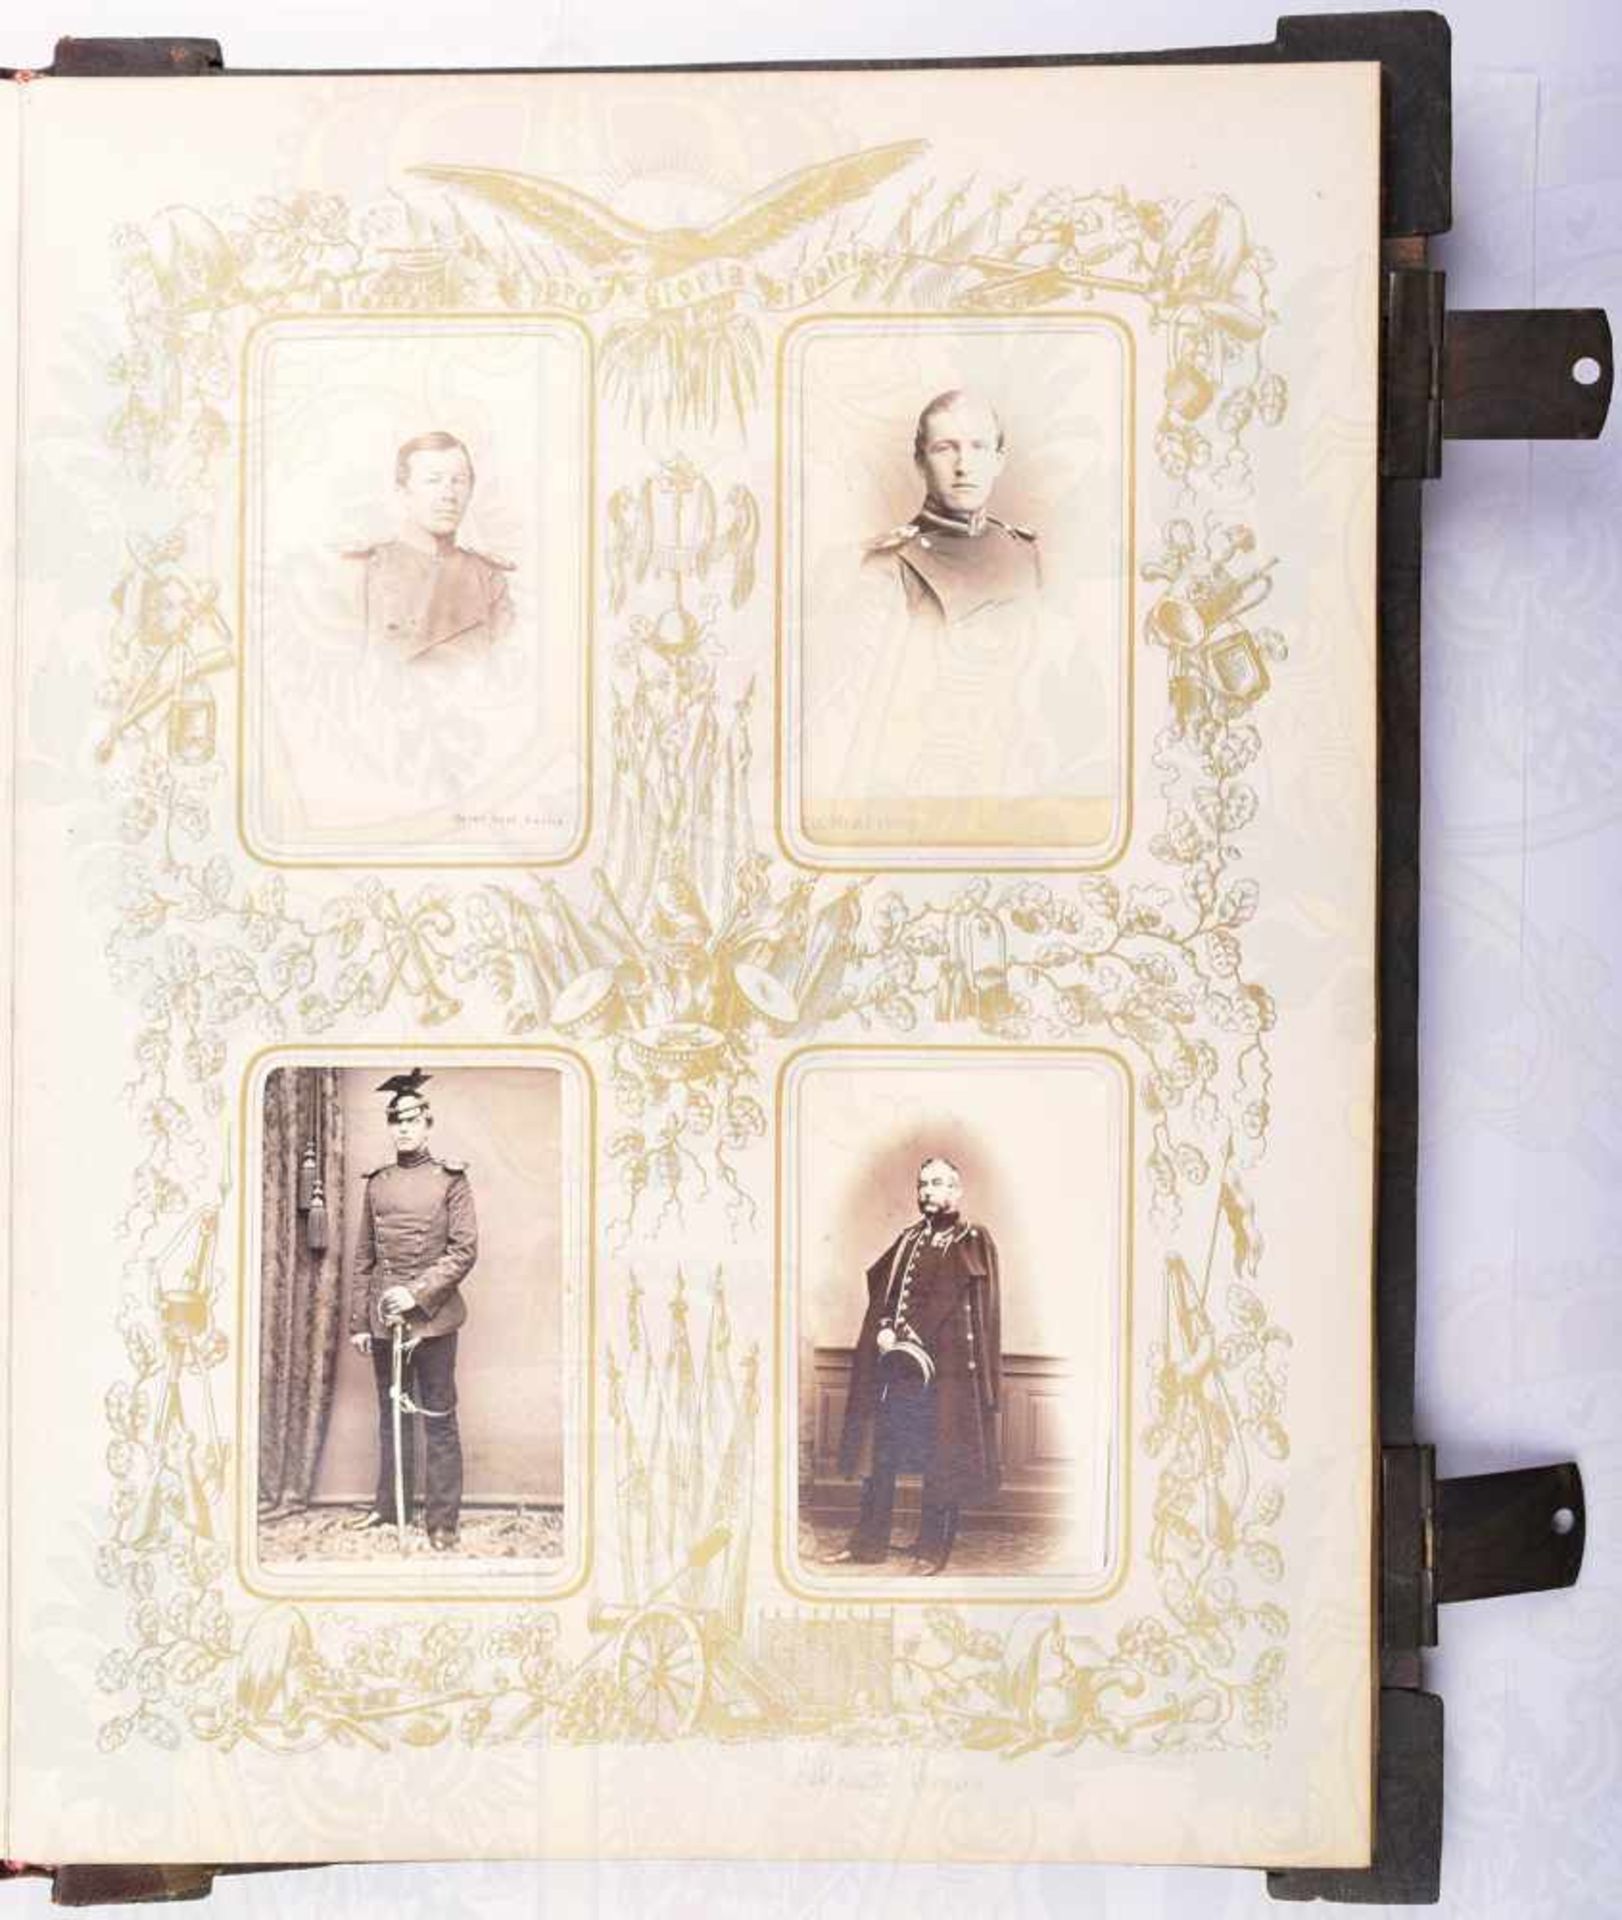 OFFIZIERSGESCHENK FOTOALBUM 1865, für Wachtmeister Försterling nach 40 Dienstjahren 1825-1865 ( - Bild 3 aus 3